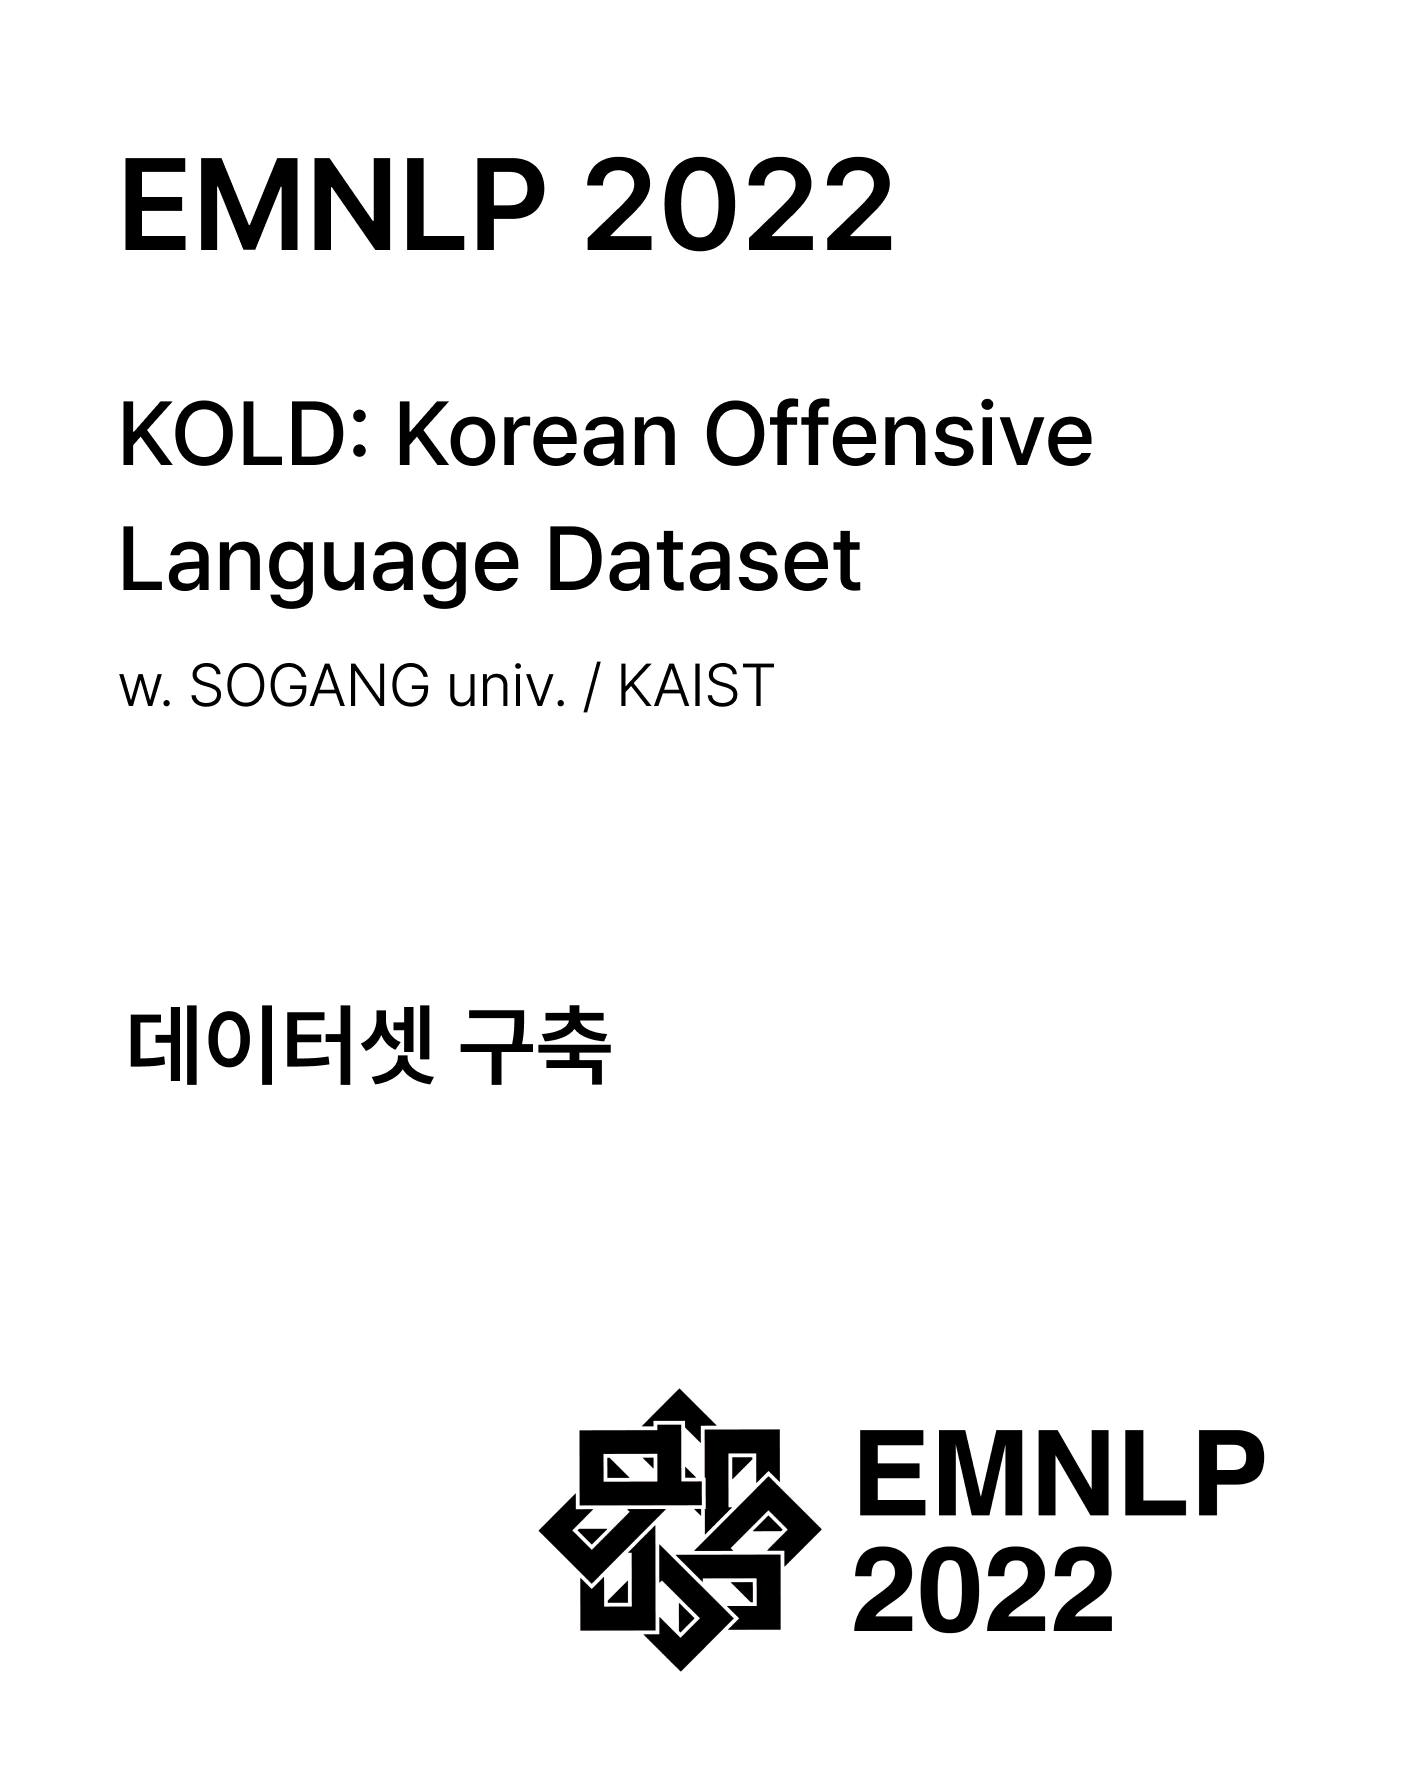 KOLD: Korean Offensive Language Dataset